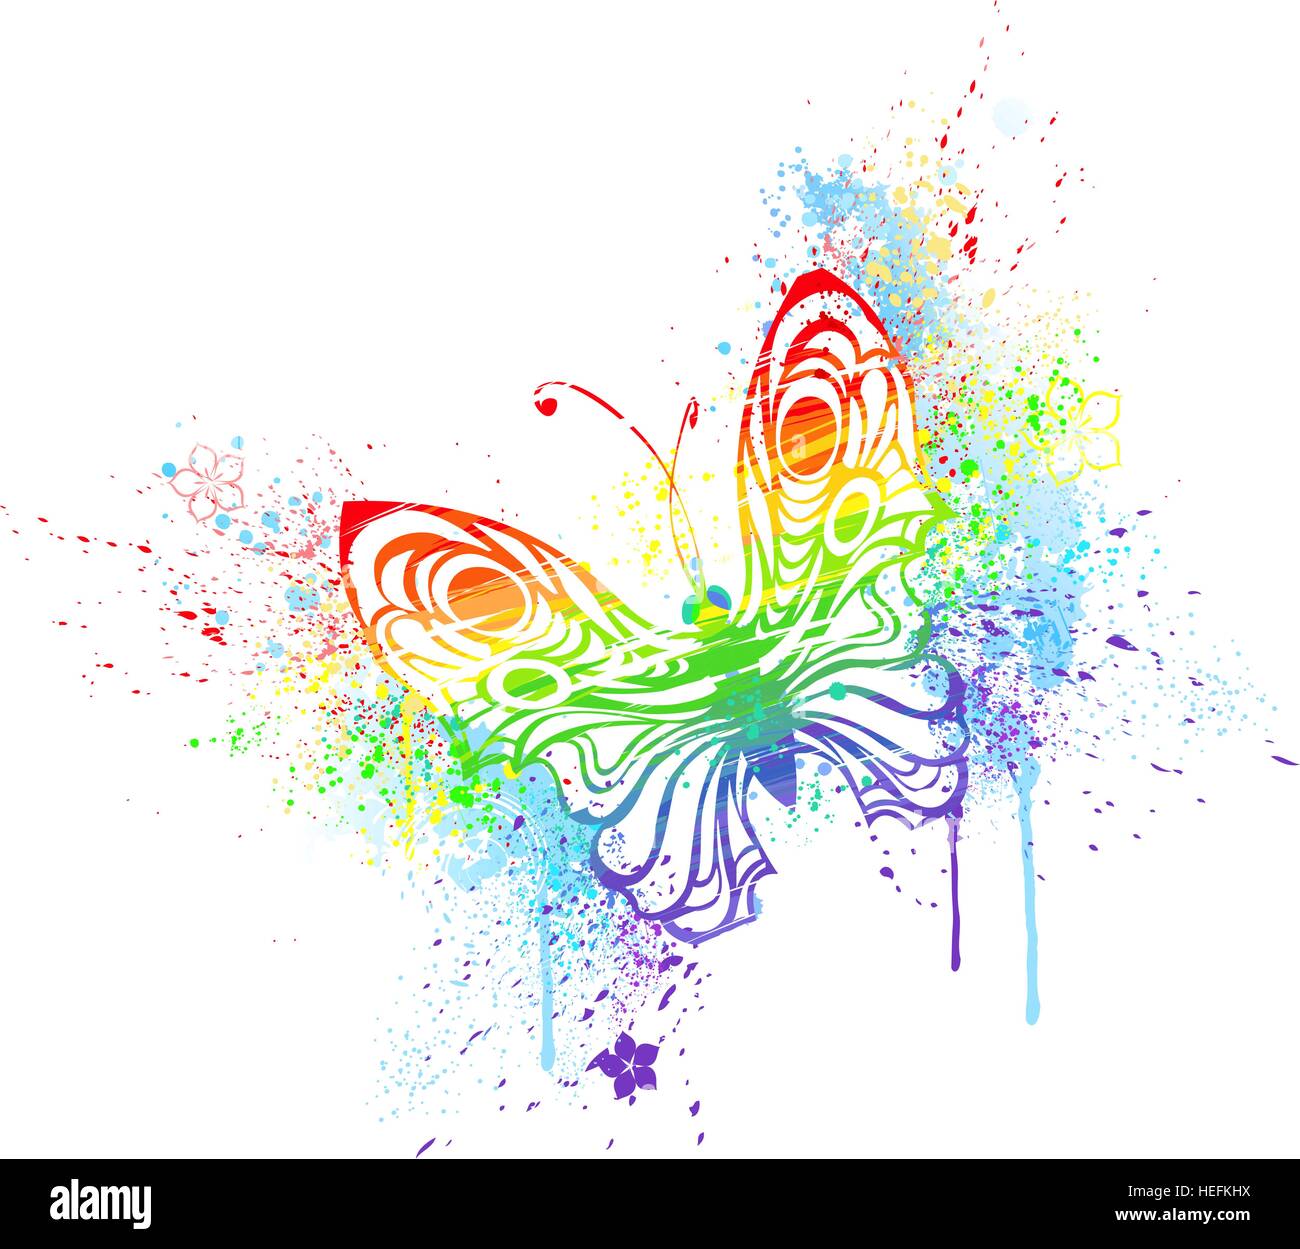 stilisierten Schmetterling bemalt mit den Farben des Regenbogens, auf einem weißen Hintergrund. Stock Vektor